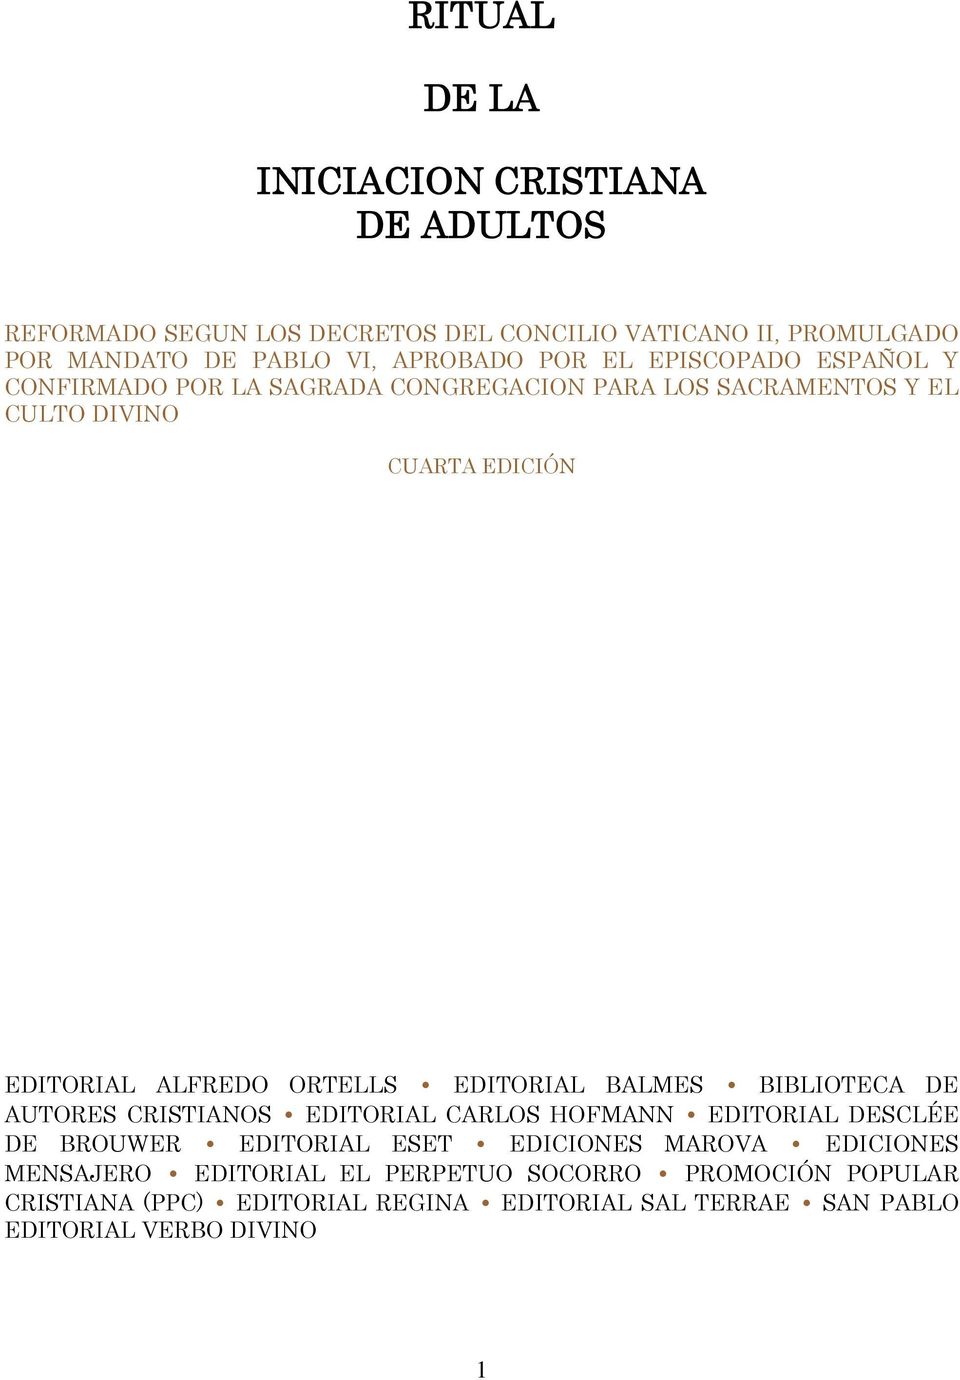 ORTELLS EDITORIAL BALMES BIBLIOTECA DE AUTORES CRISTIANOS EDITORIAL CARLOS HOFMANN EDITORIAL DESCLÉE DE BROUWER EDITORIAL ESET EDICIONES MAROVA